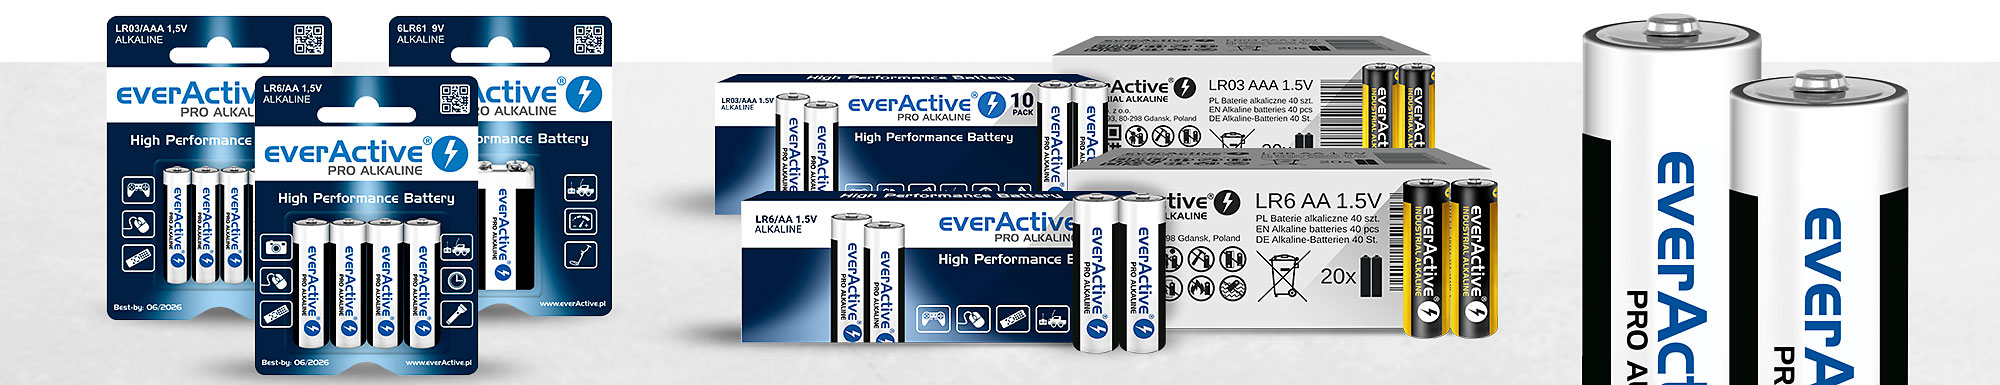 everActive Alkaline Batteries top